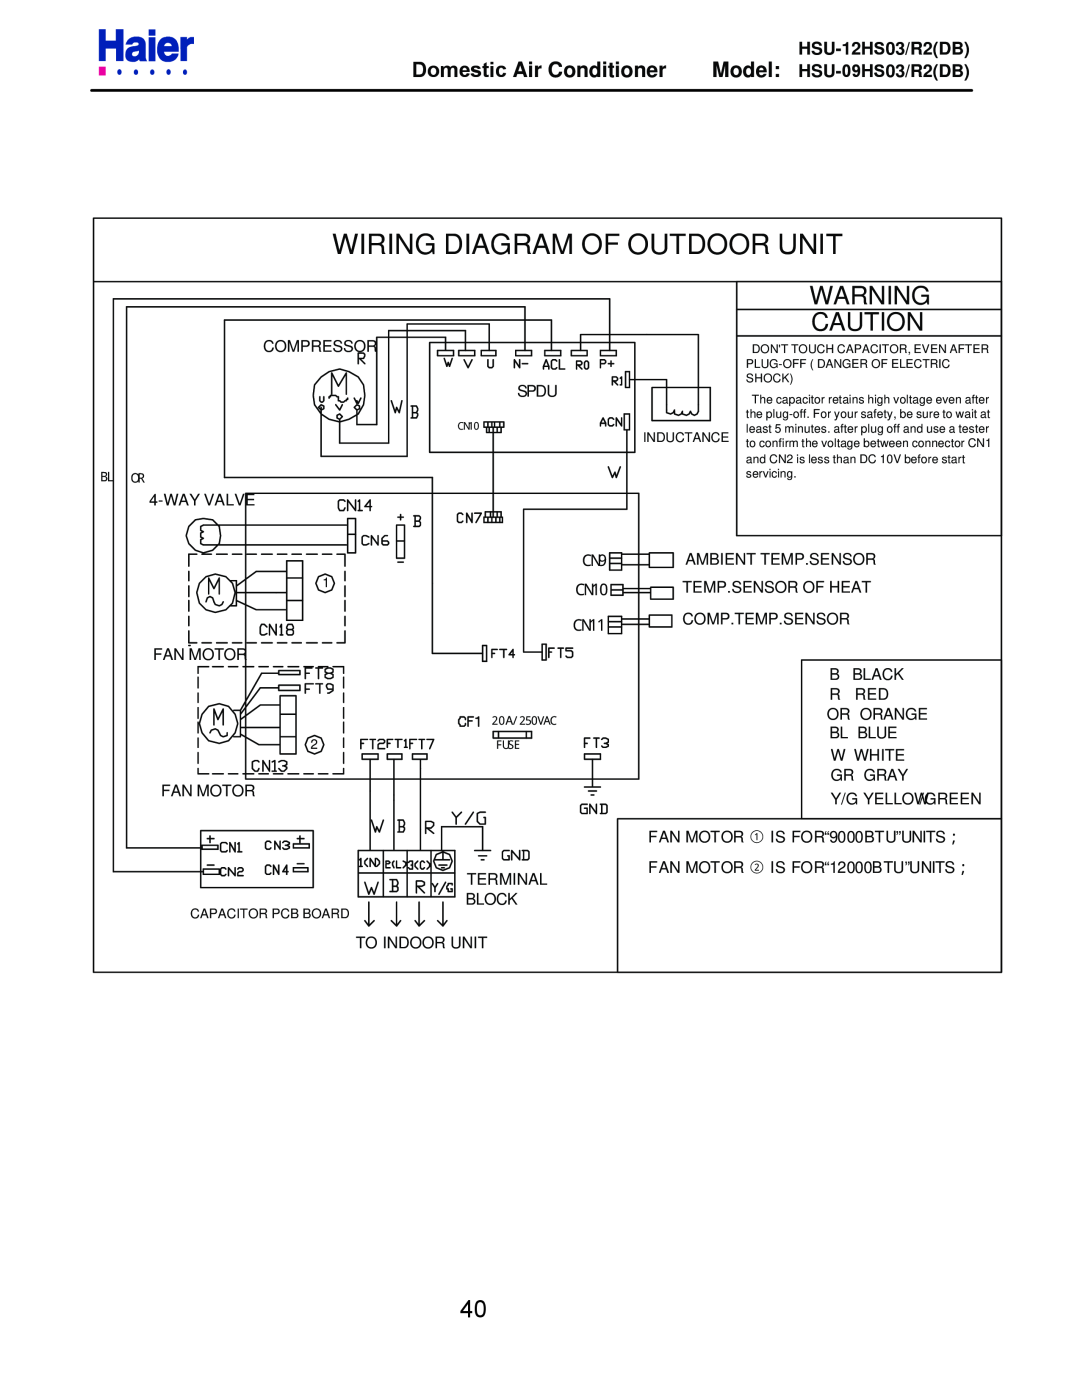 Haier Wiring Diagram Of Outdoor Unit, Domestic Air Conditioner, HSU-12HS03/R2DB, Model HSU-09HS03/R2DB, Spdu 